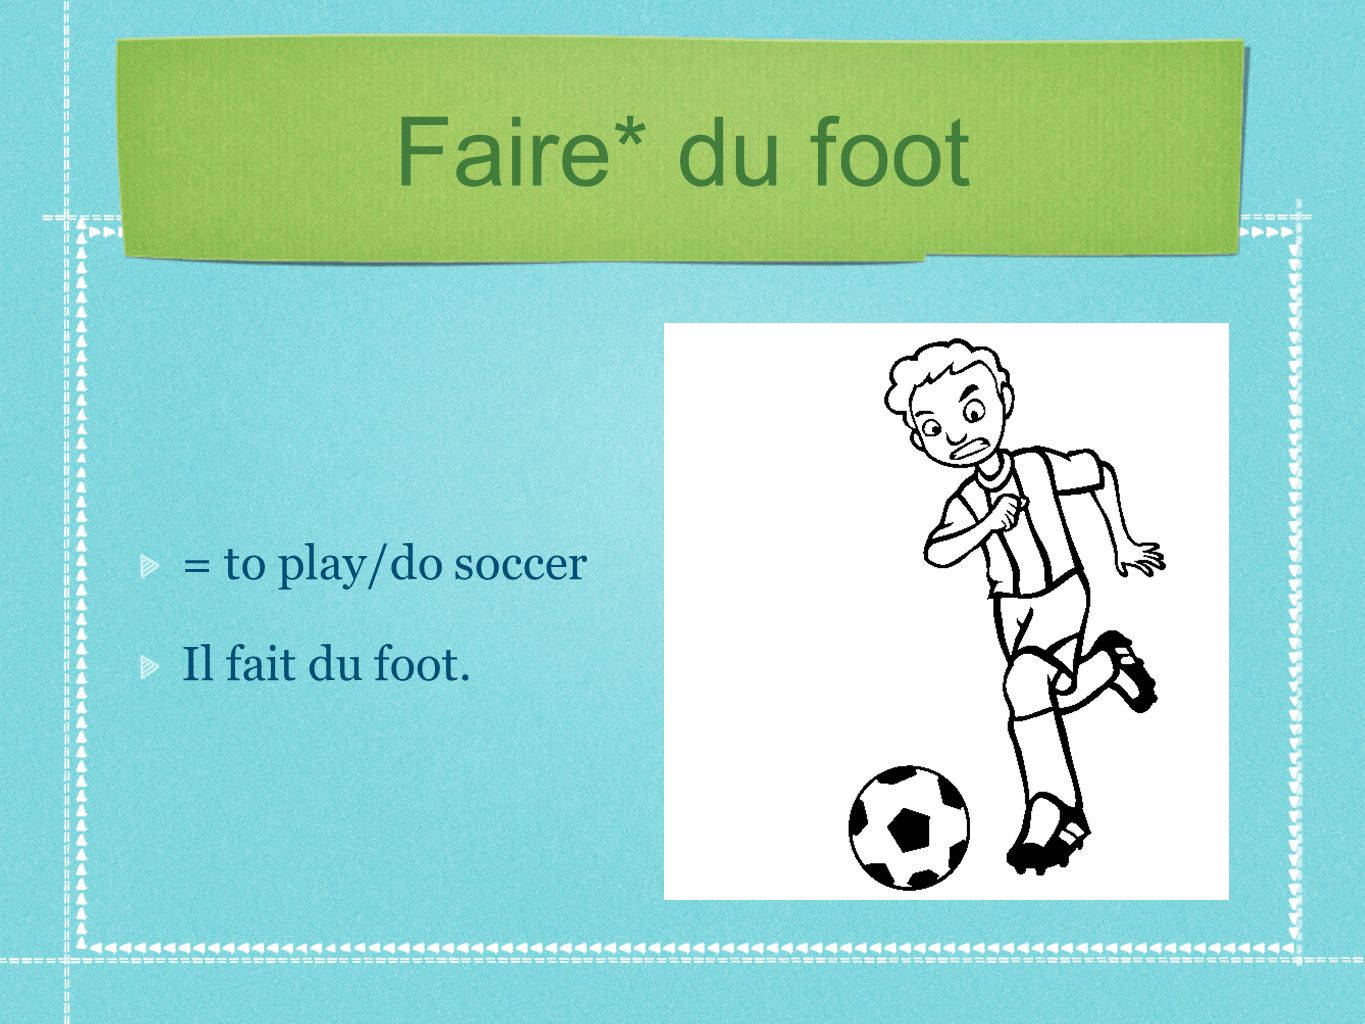 Faire* du foot = to play/do soccer Il fait du foot.